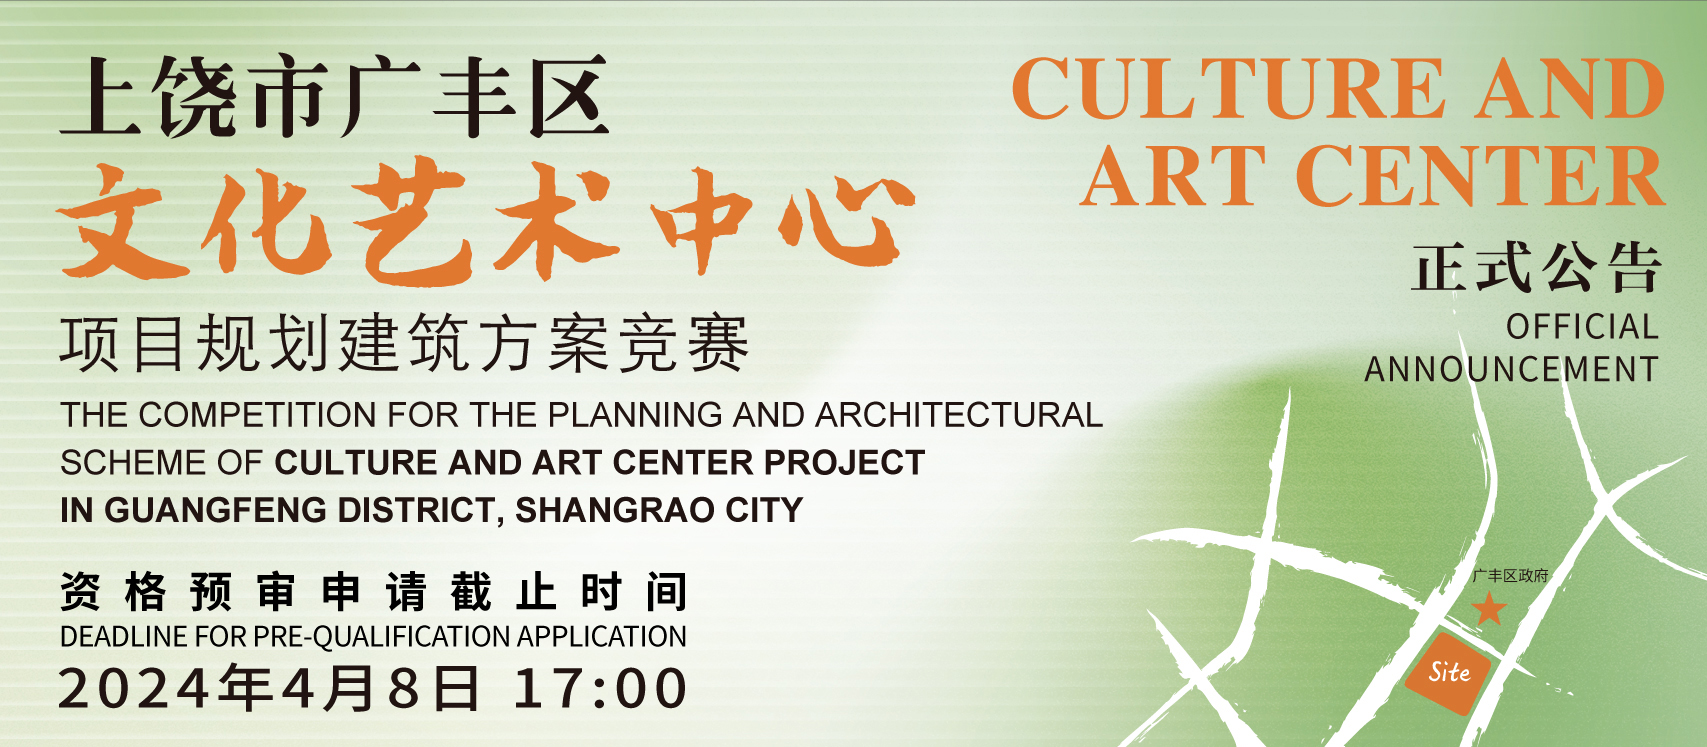 正式公告 | 上饶市广丰区文化艺术中心项目规划建筑方案竞赛